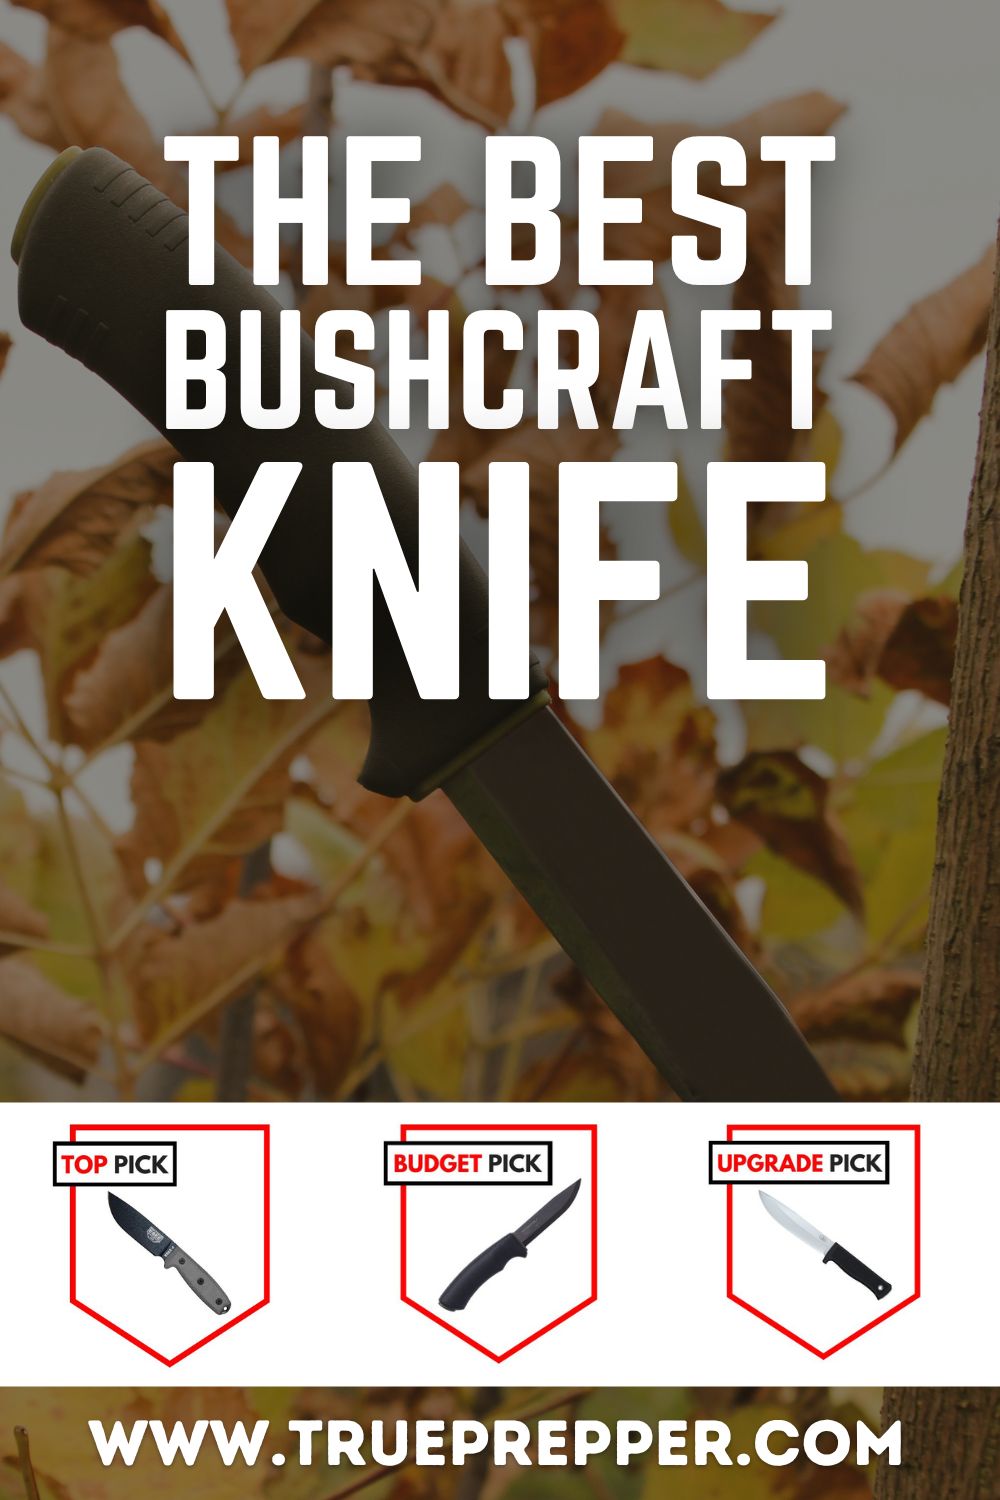 The Best Bushcraft Knife